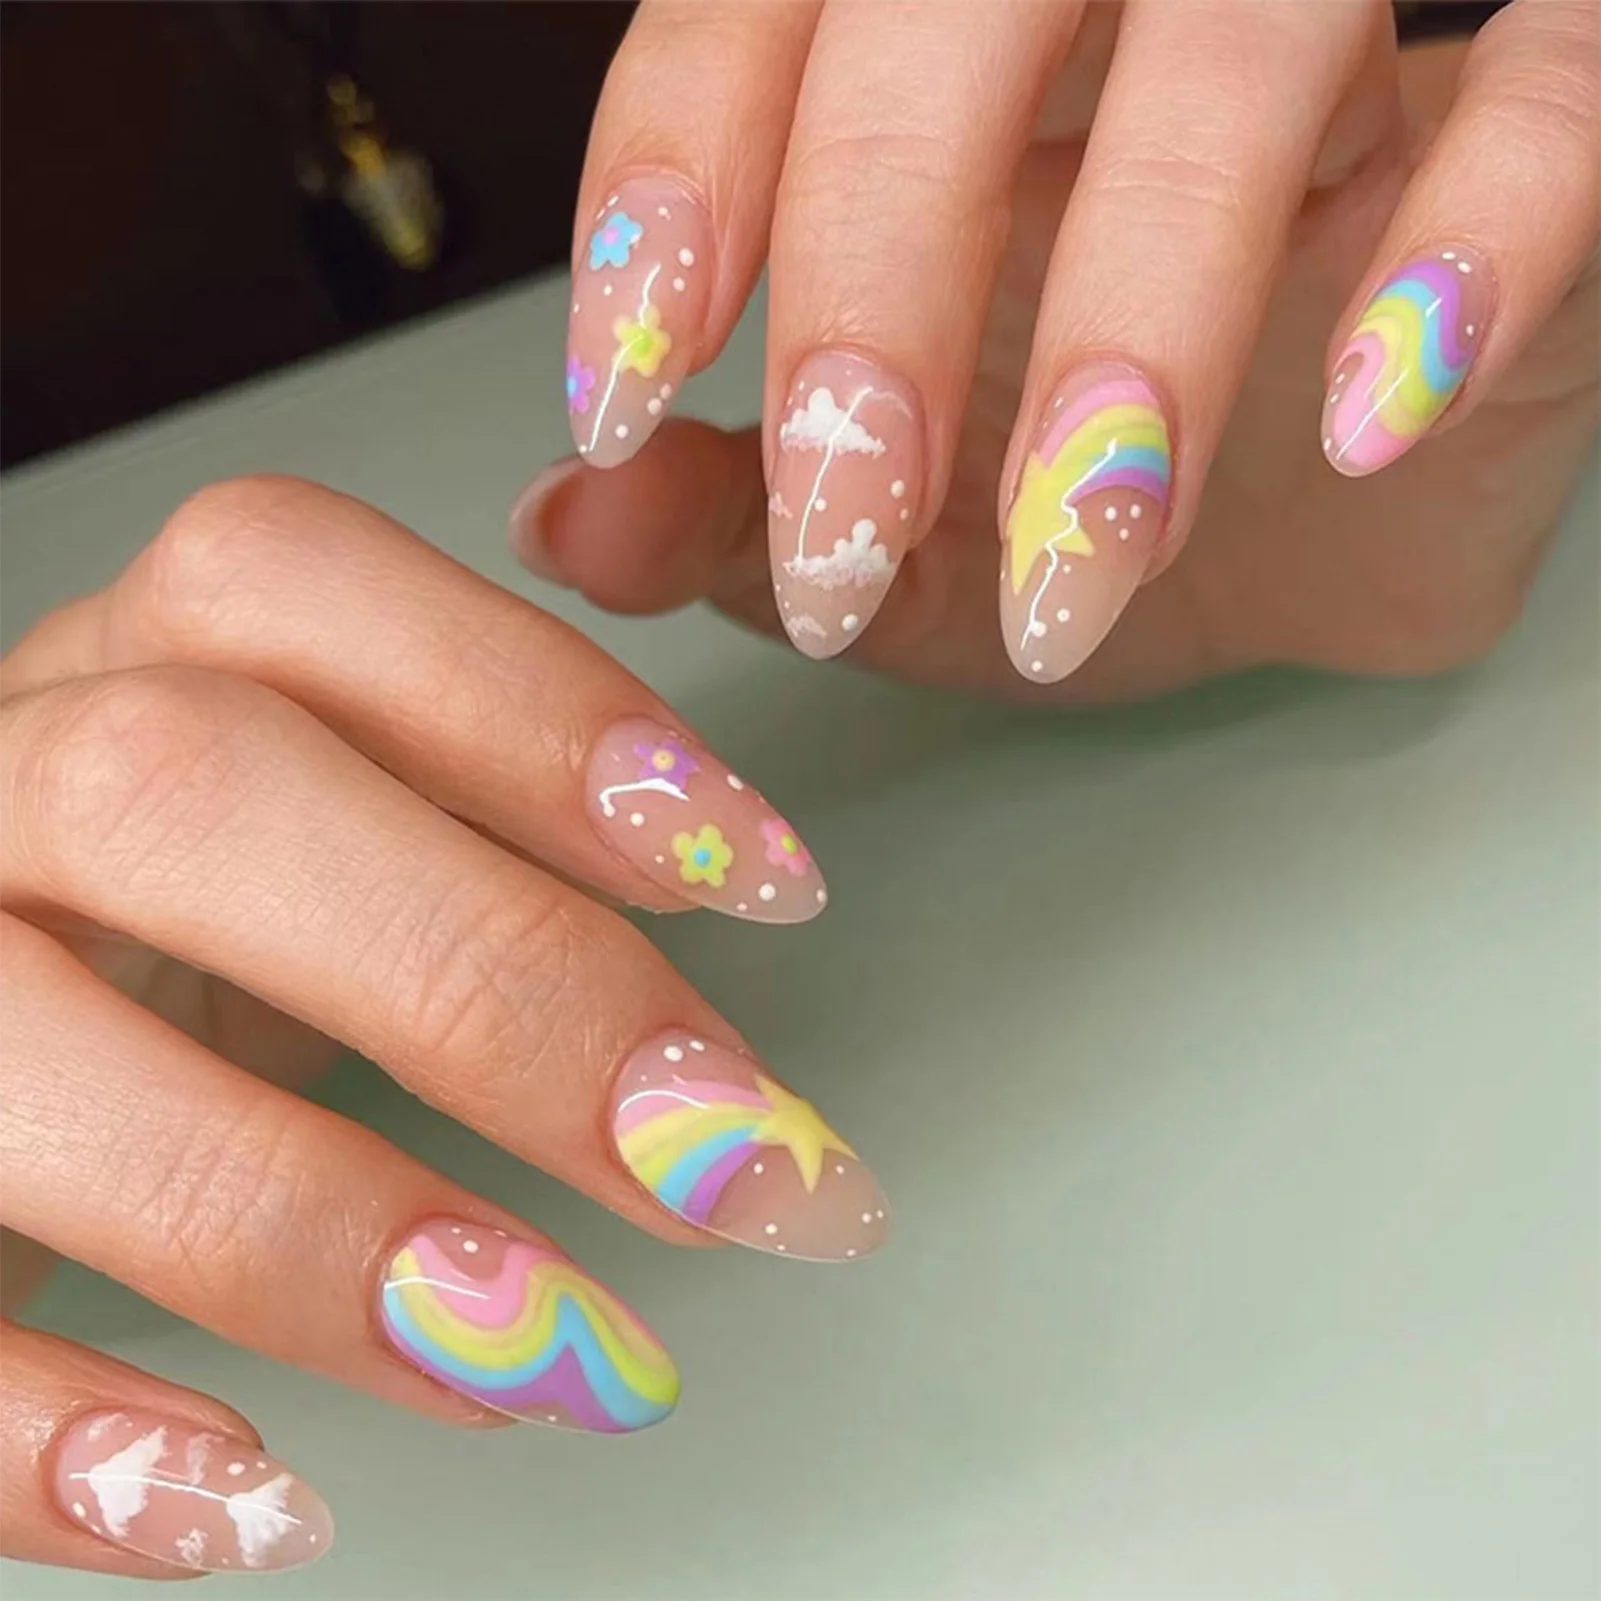 

24pcs Cute Colorful False Nail Tips for Girl Rainbow Cloud Star Printed Almond Fake Nails Full Cover Reusable Adhesive Fake Nail